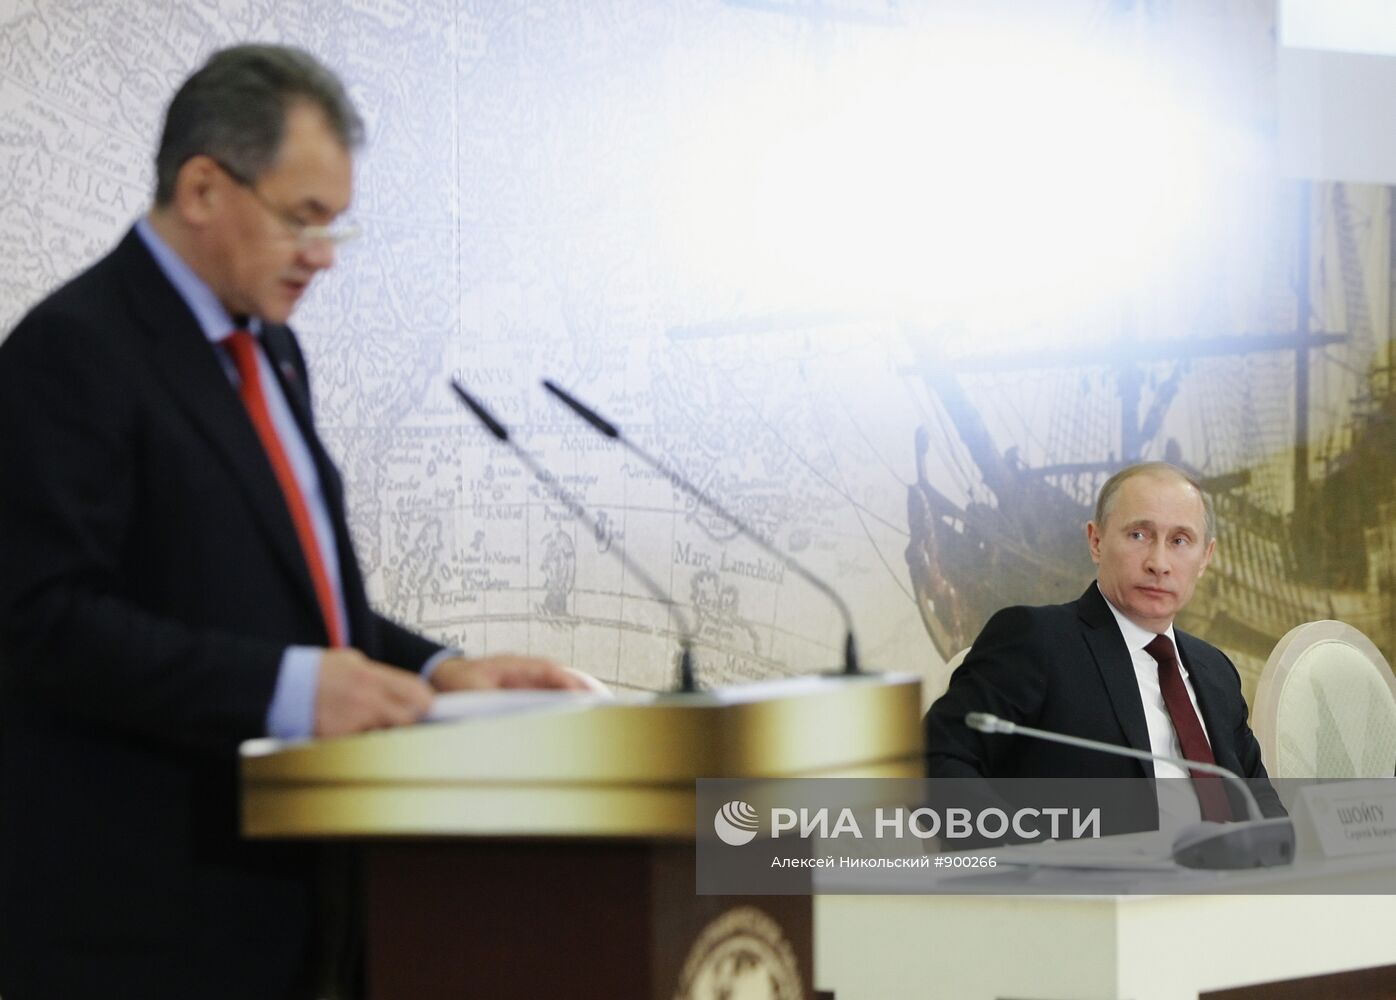 В.Путин на заседании Попечительского совета РГО в Москве